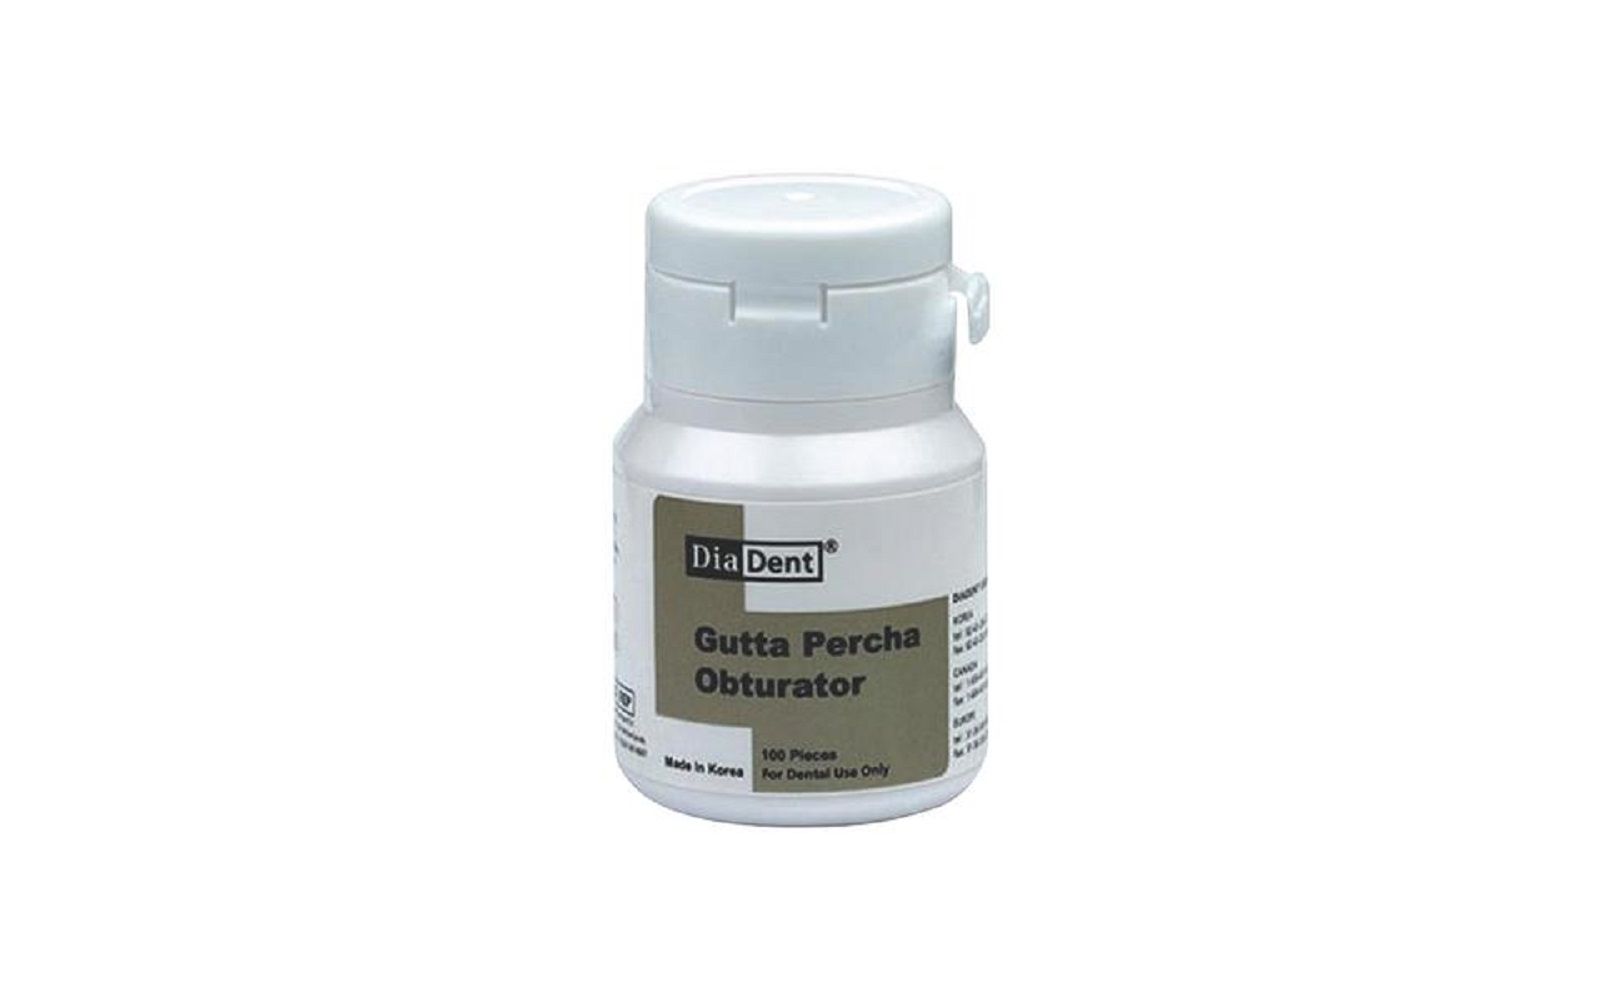 Gutta percha obturator – pellets, 100/pkg